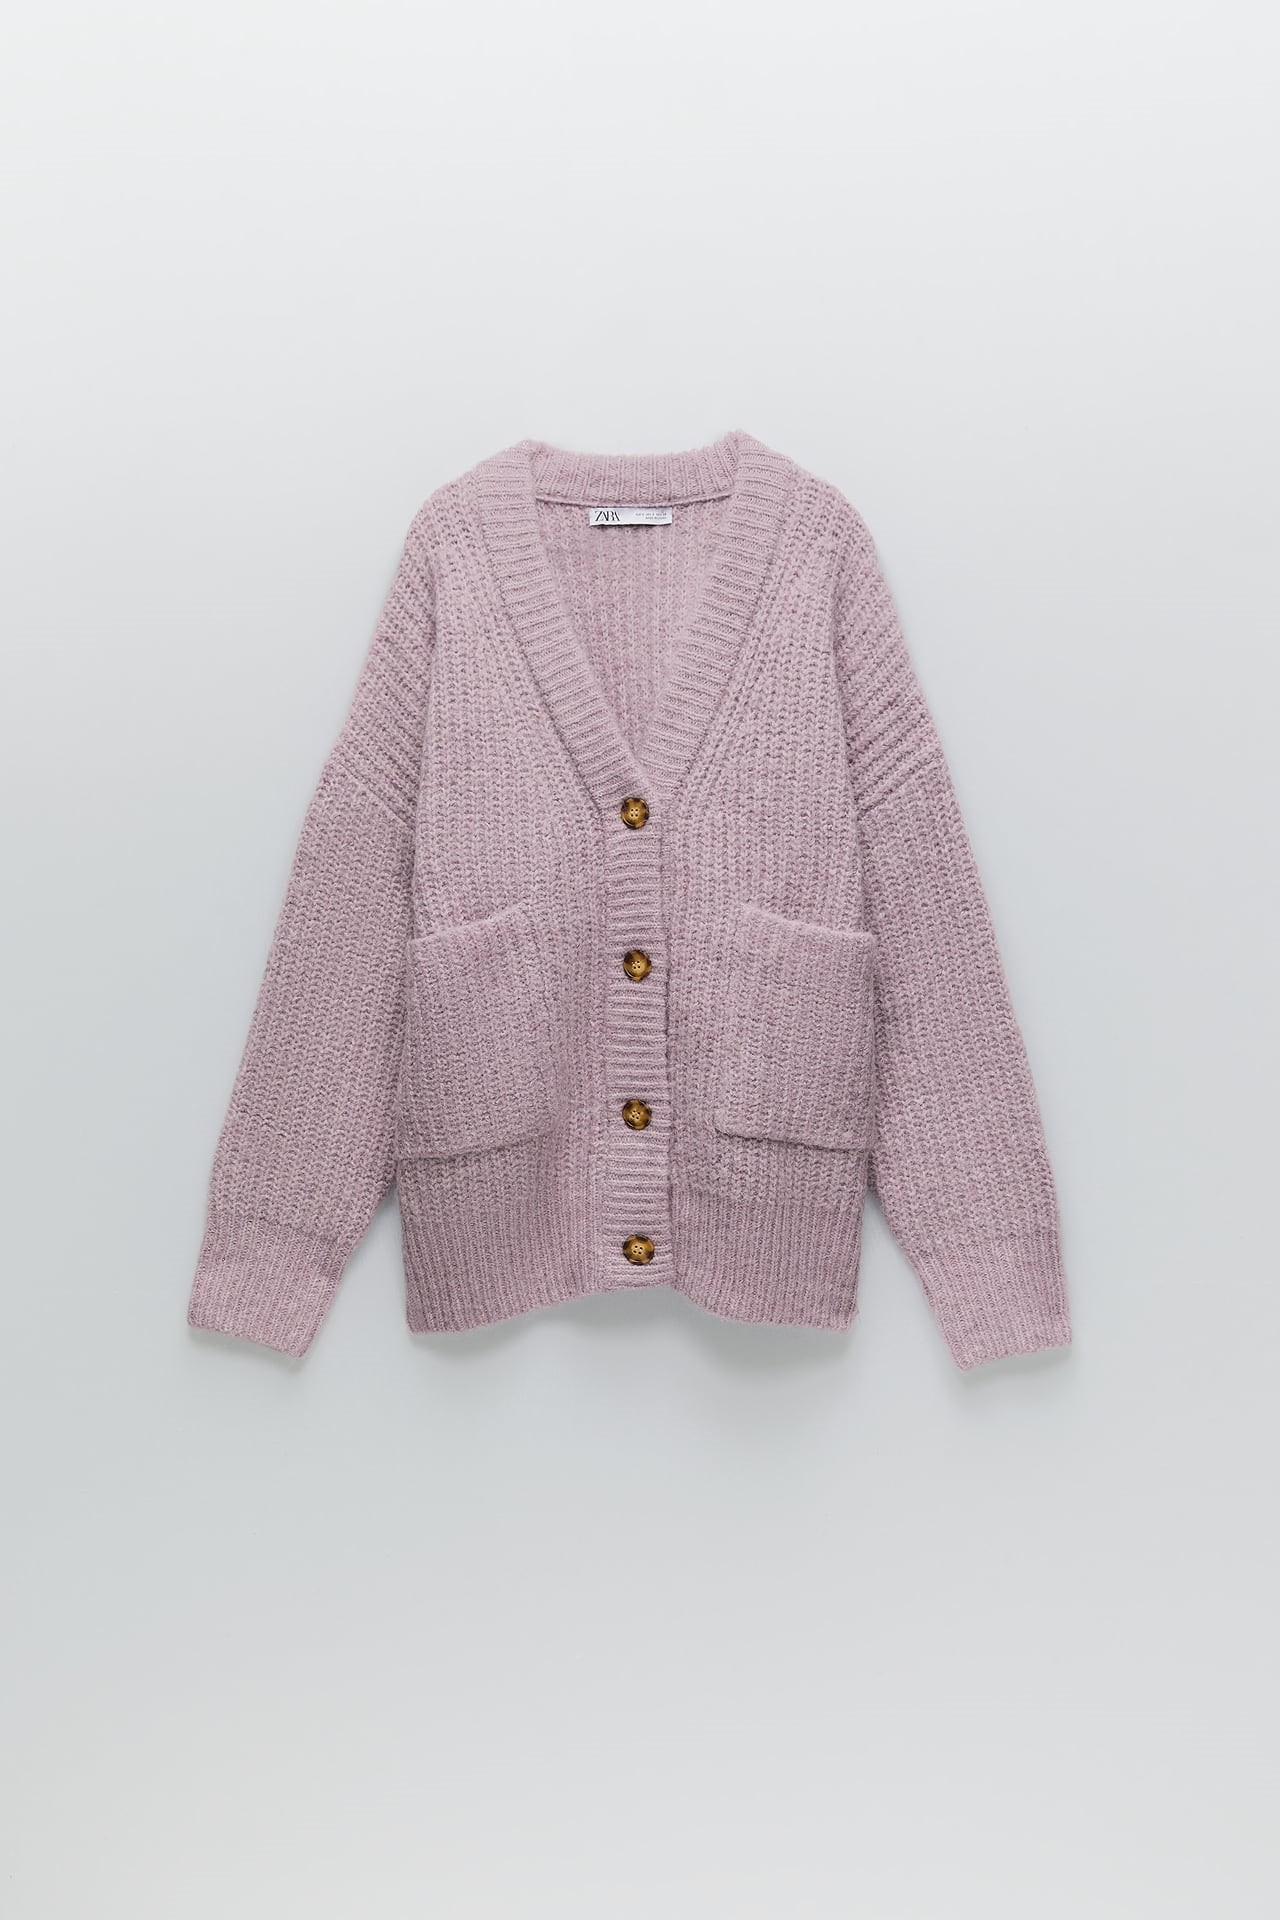 Chaqueta lila confeccionada con tejido en mezcla de lana, con bolsillos de plastrón, de Zara (29,95€)